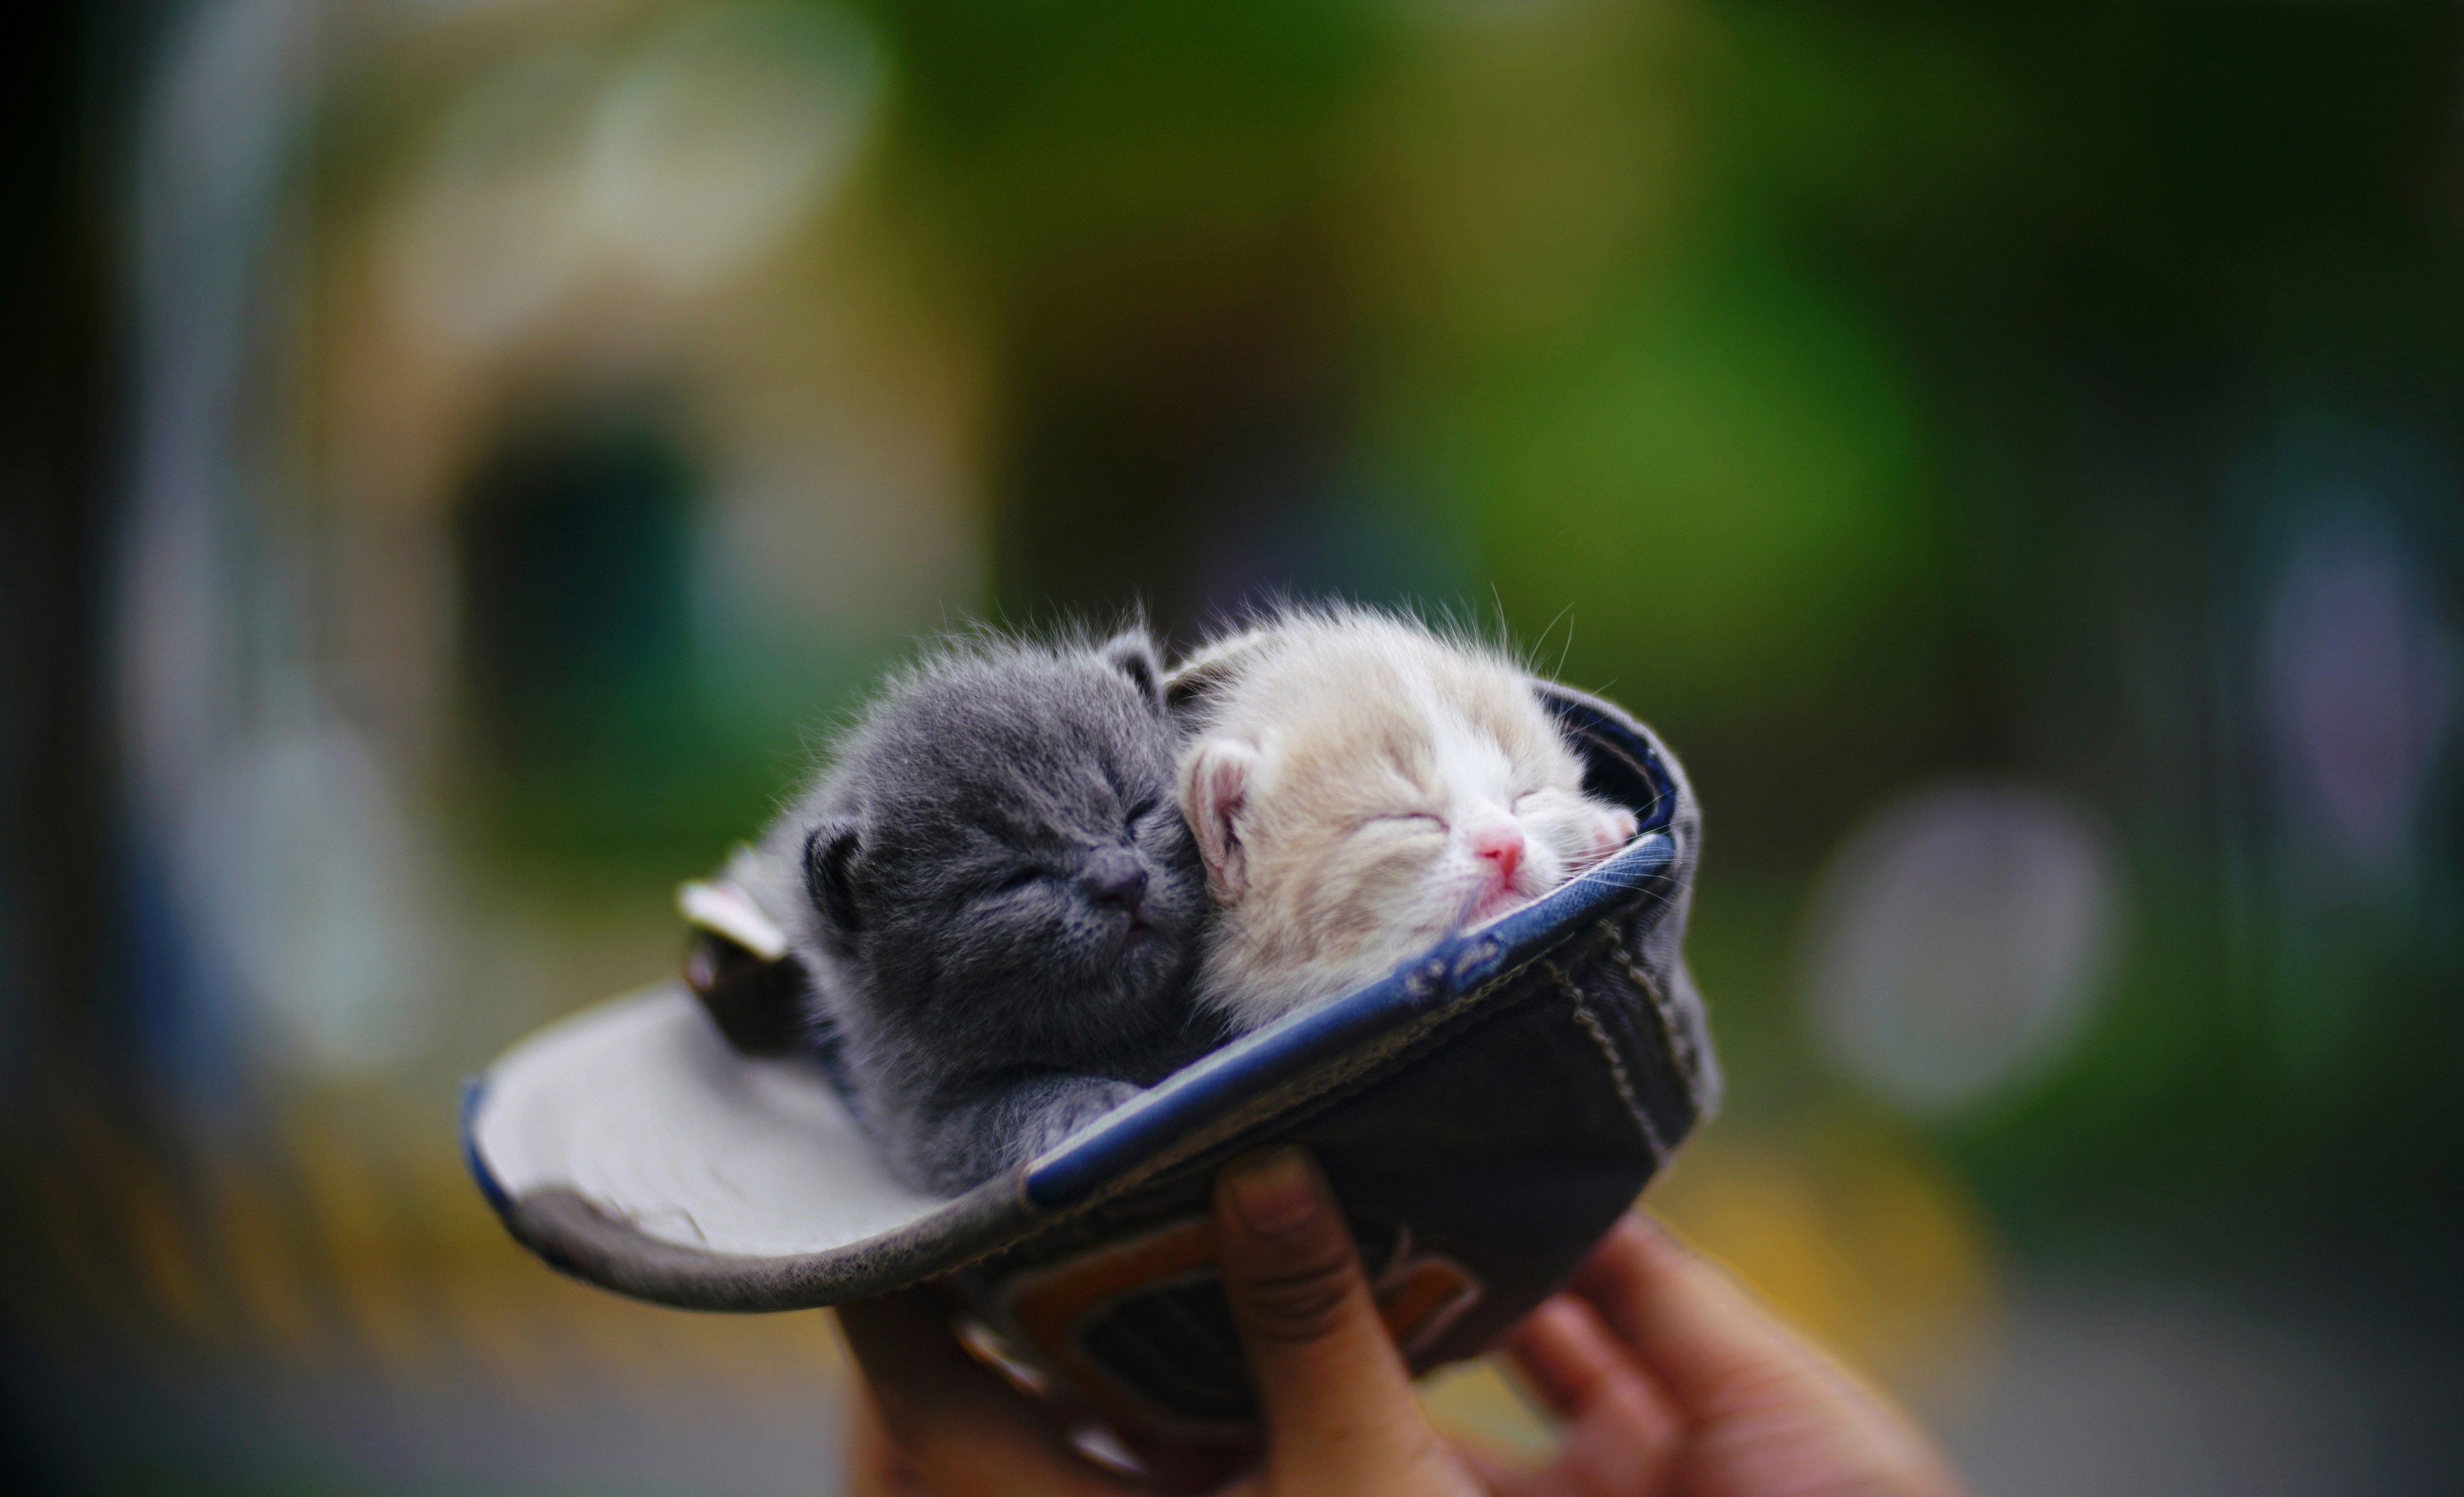 Two Little Cute Kittens In Hat Desktop Wallpapers 2560x1600